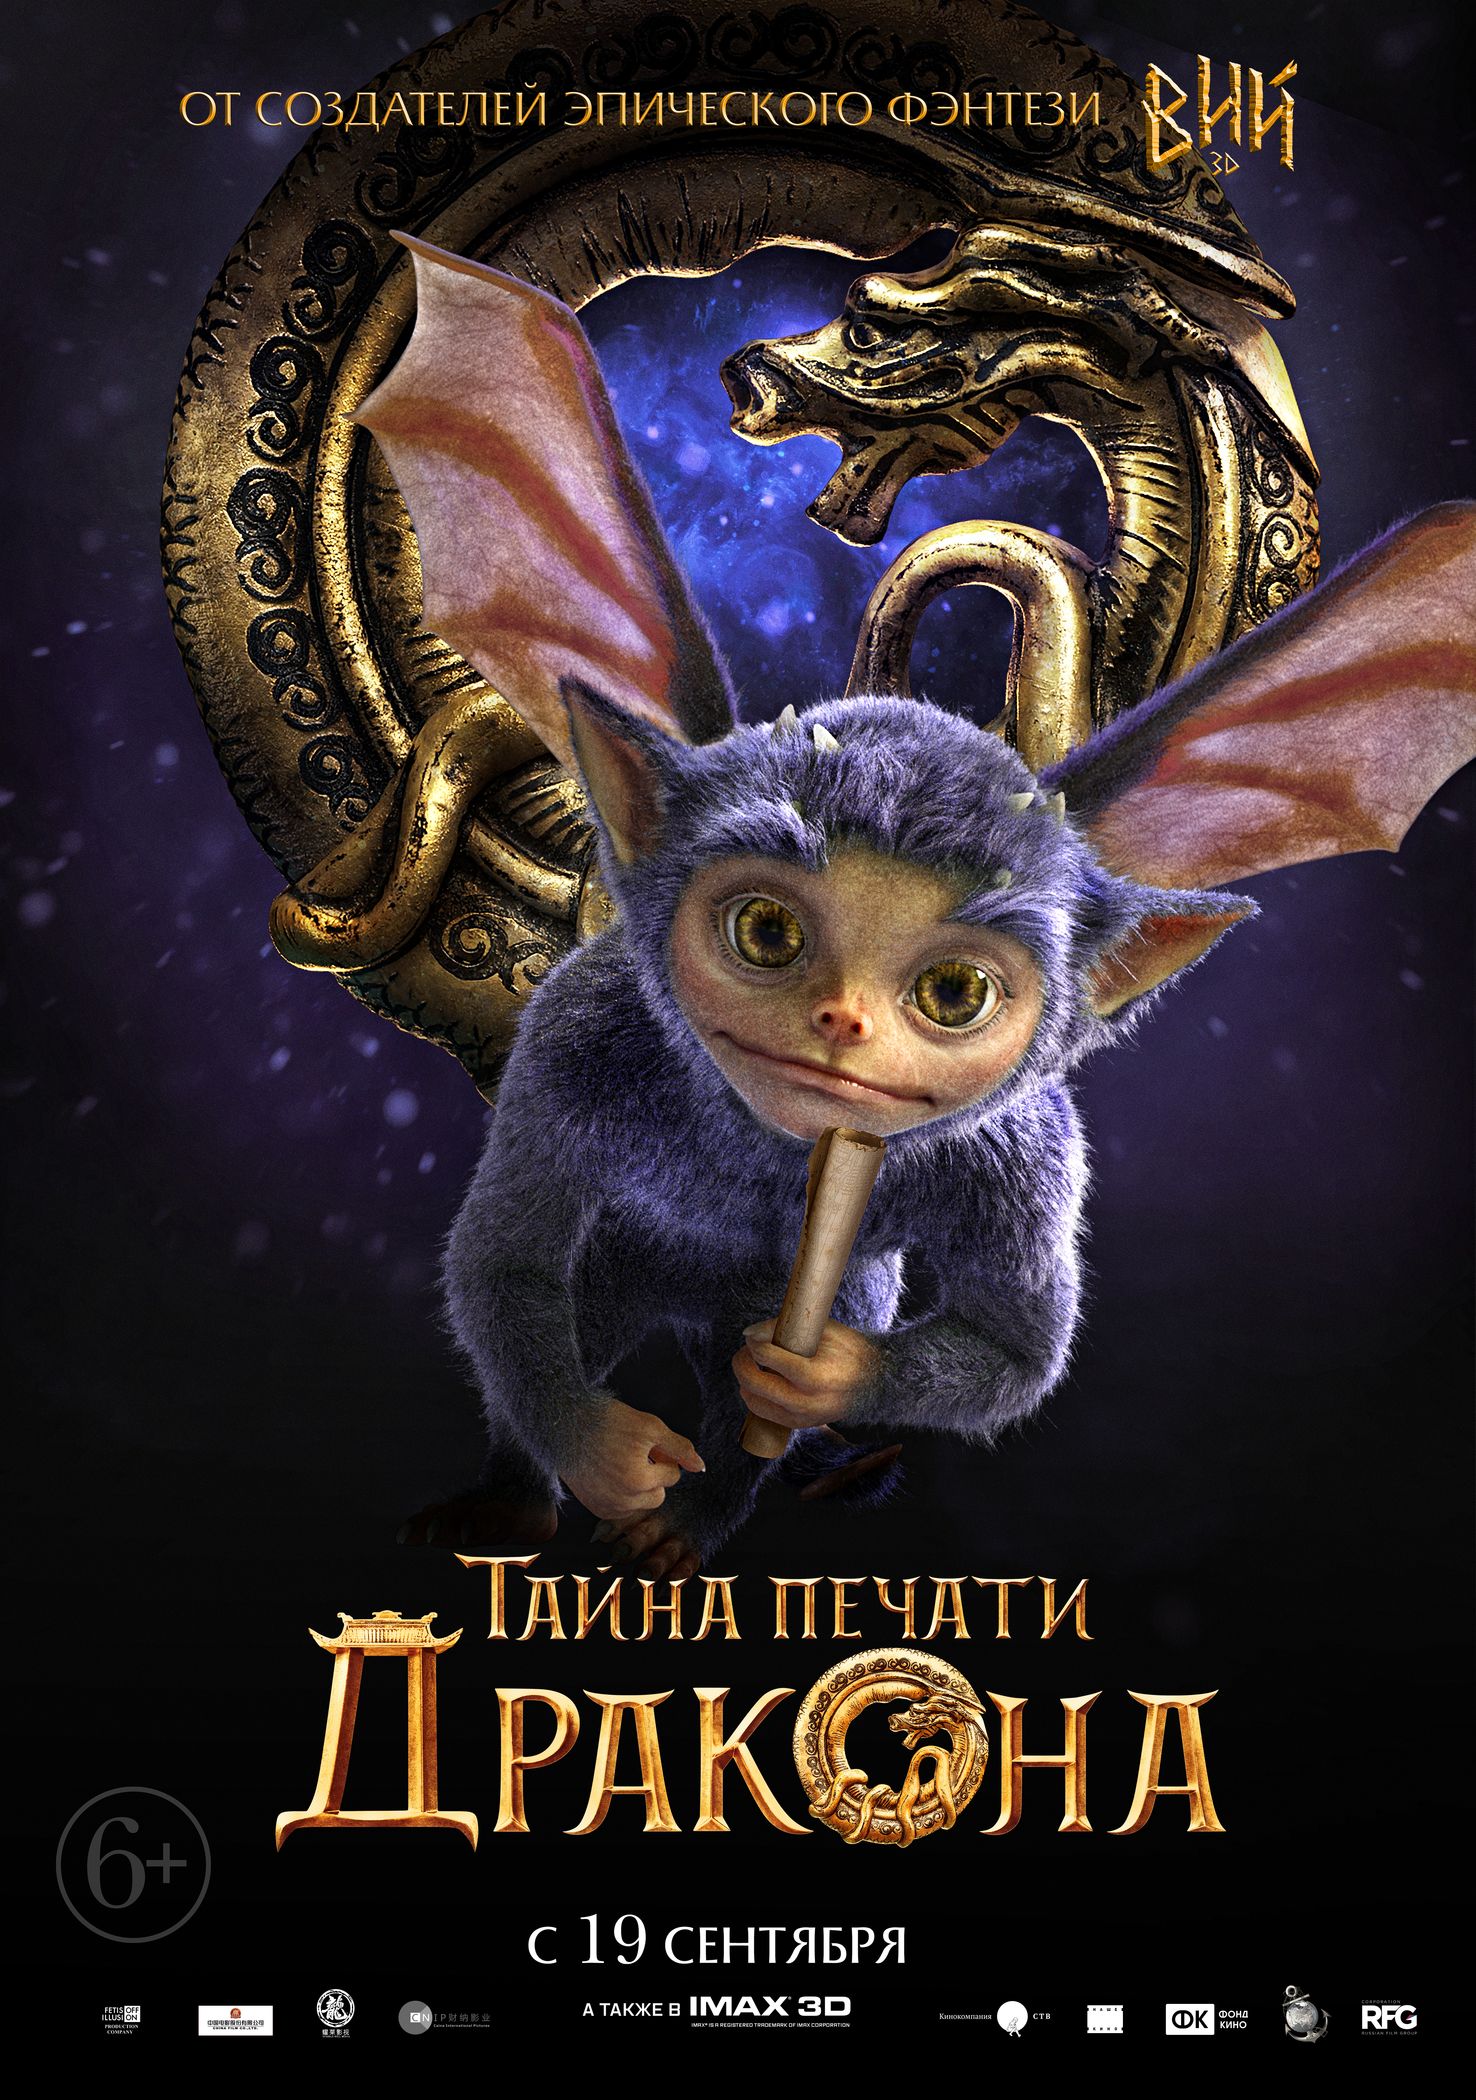 Тайна Печати дракона, постер № 9